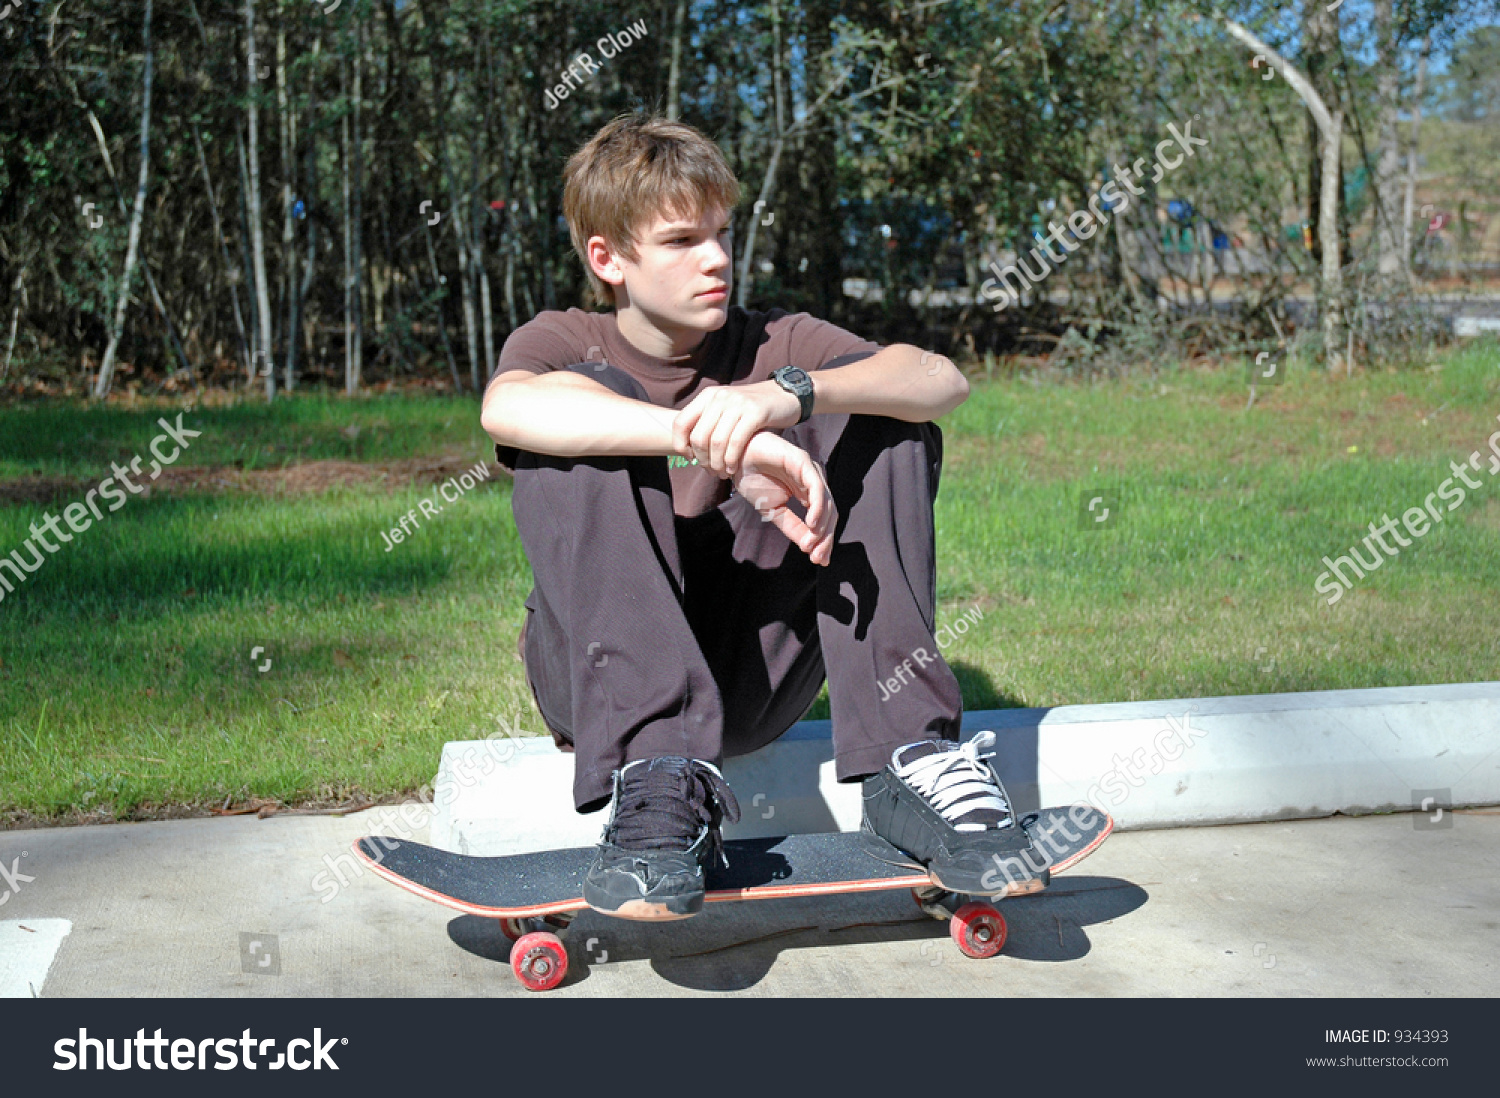 stock-photo-teen-skateboarder-at-rest-934393.jpg